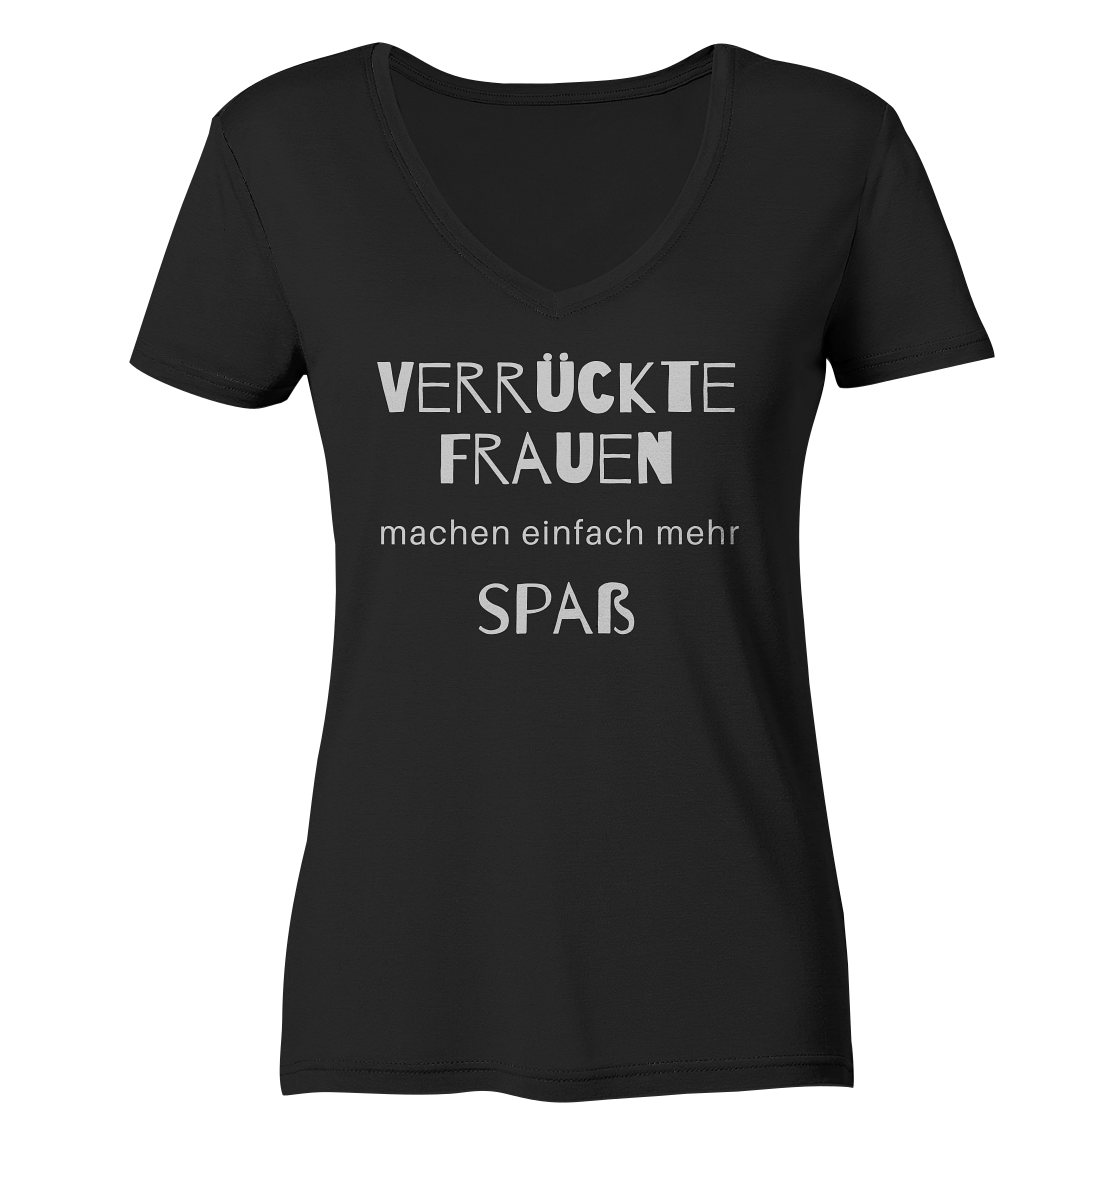 Damen-T-Shirt V-Ausschnitt mit Aufdruck "Verrückte Frauen machen einfach mehr Spaß", schwarz